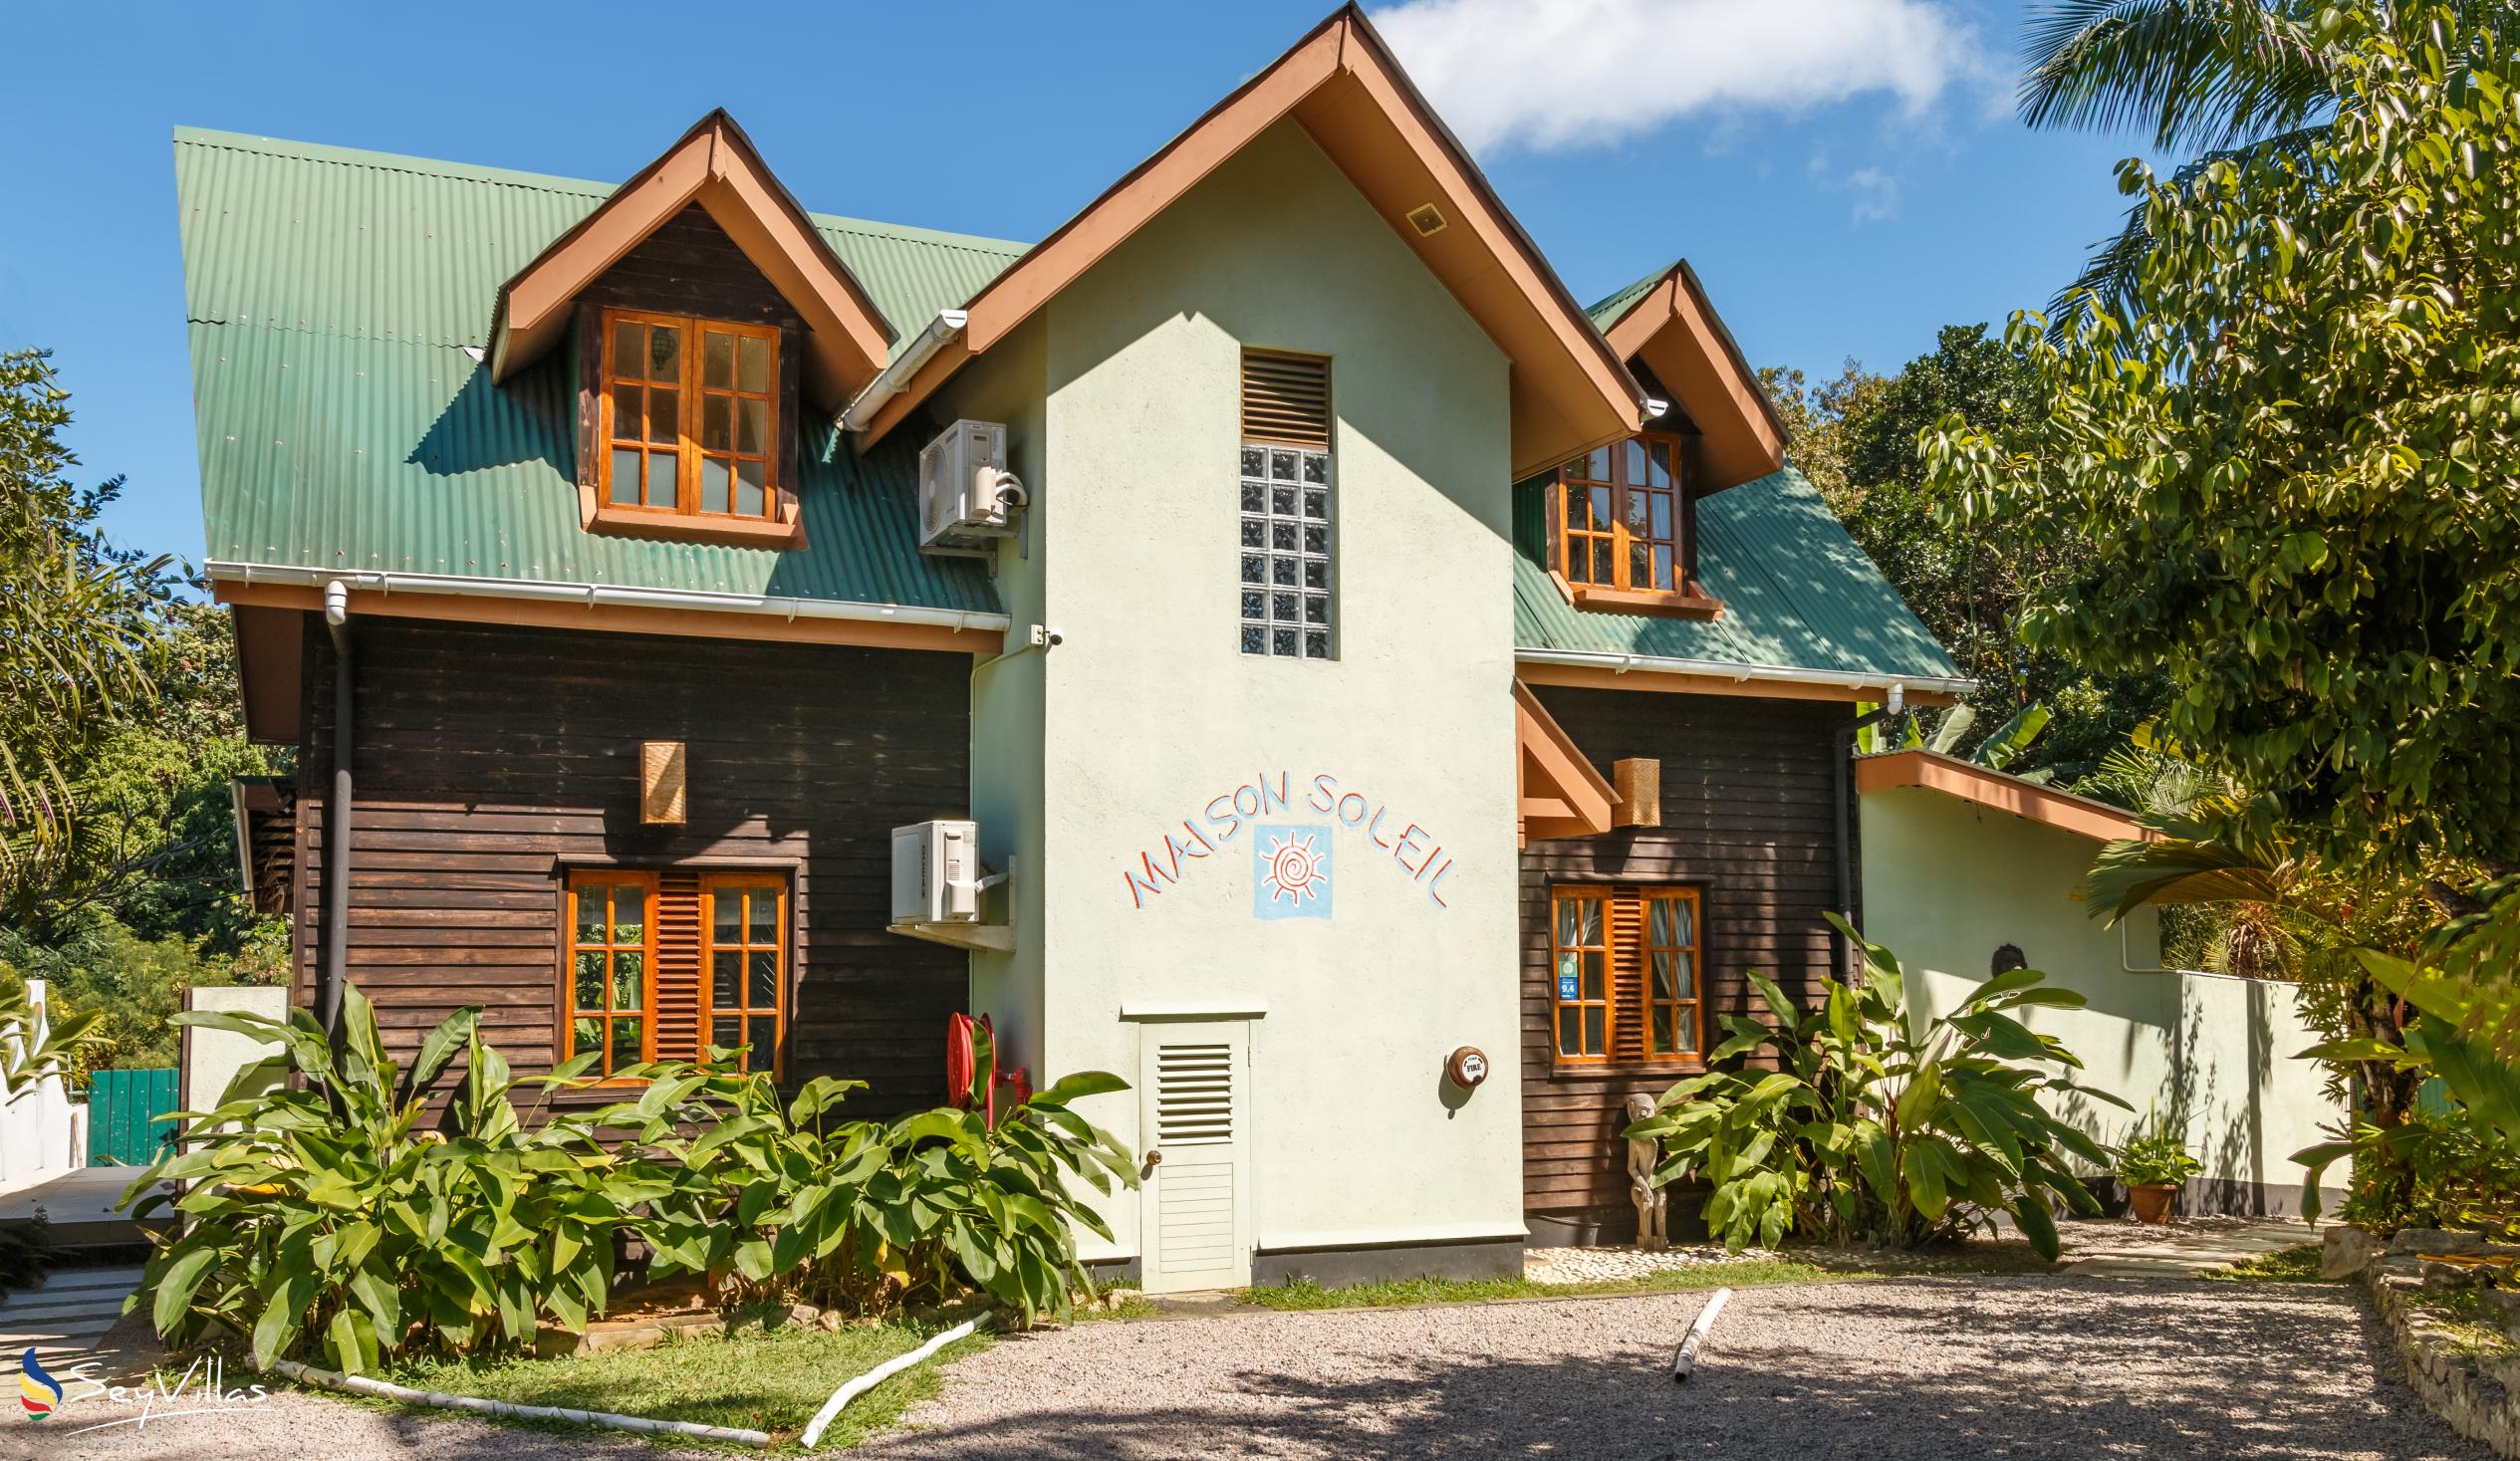 Photo 1: Maison Soleil - Outdoor area - Mahé (Seychelles)